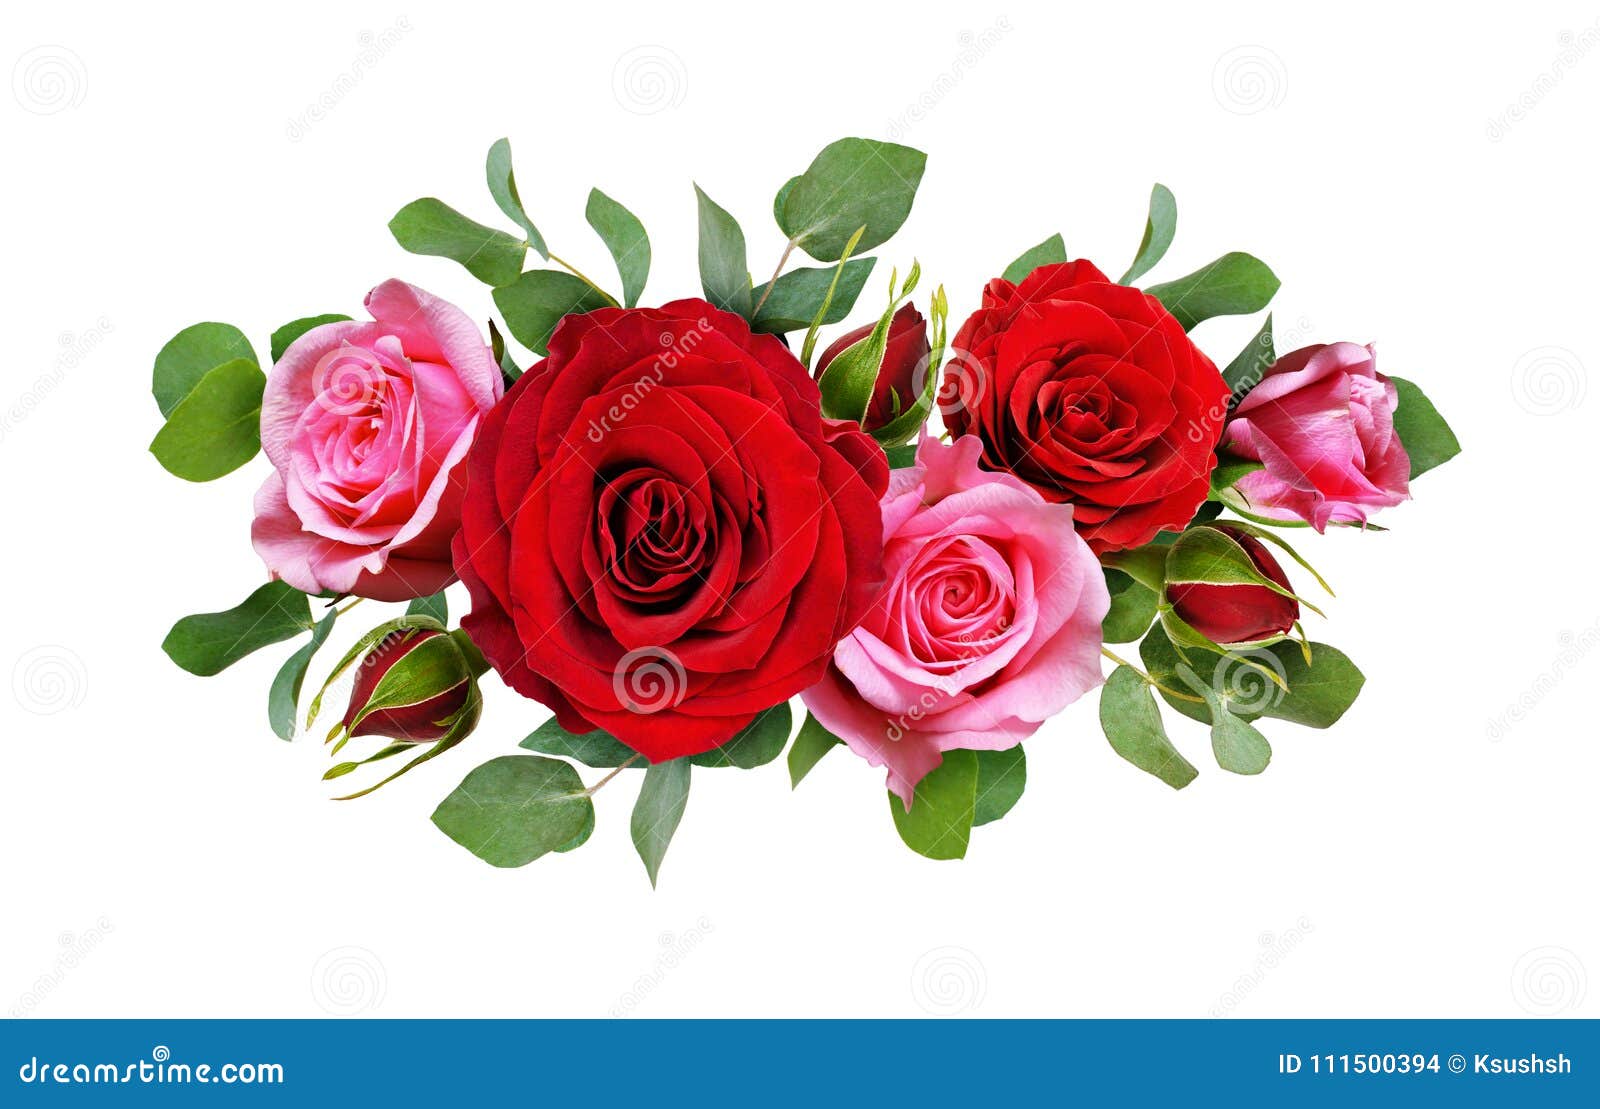 Les Fleurs De Rose De Rouge Et De Rose Avec L'eucalyptus Part Dans Un Arr  Floral Photo stock - Image du rond, ligne: 111500394